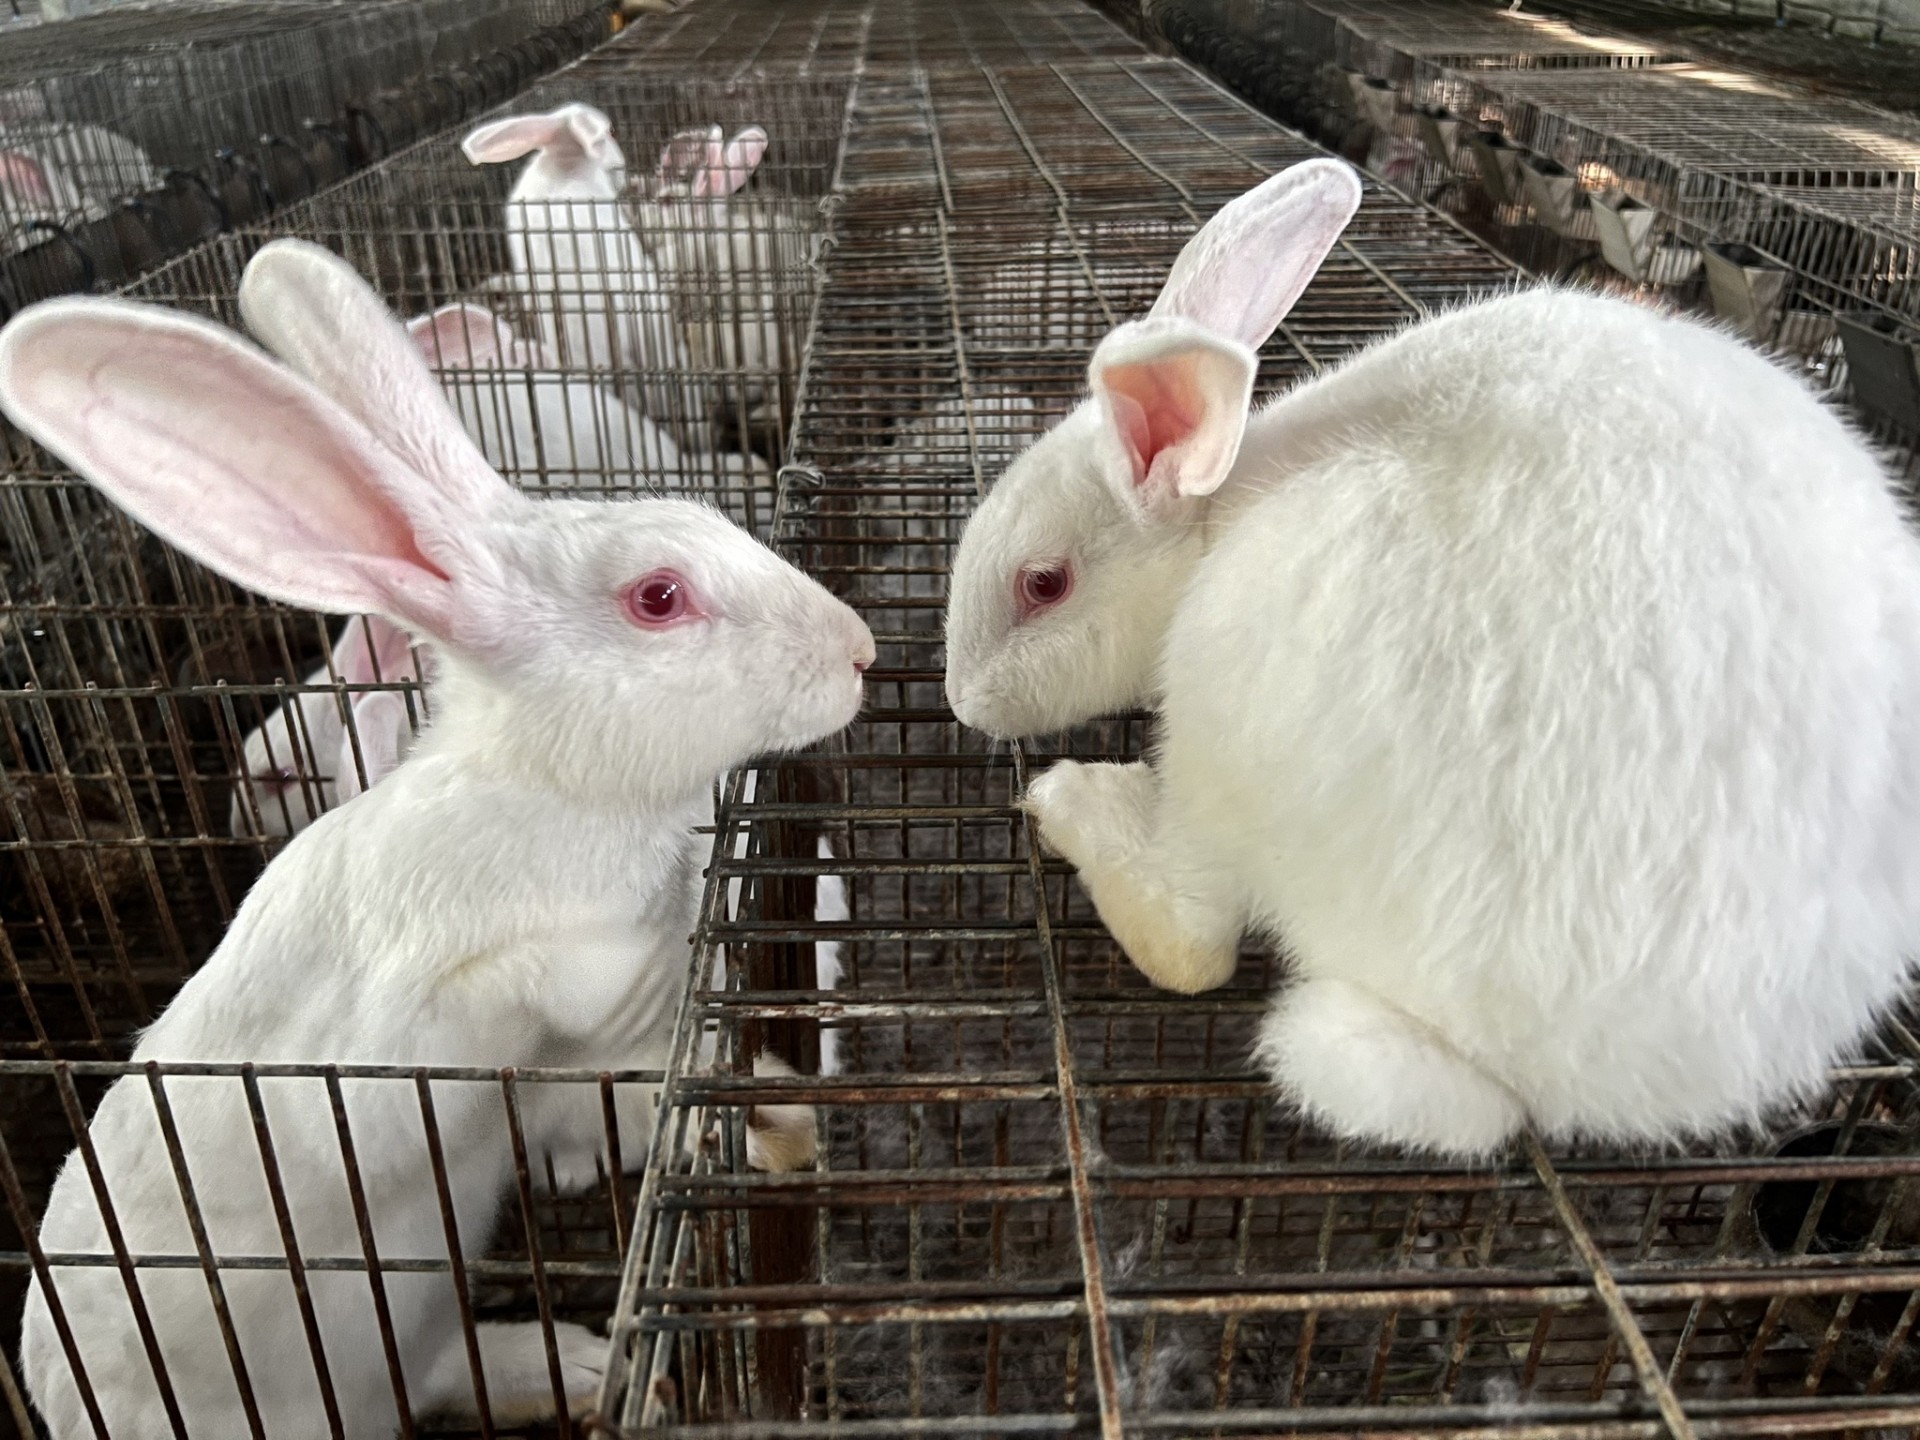 Thỏ nuôi khoảng 6 tháng cho sinh sản